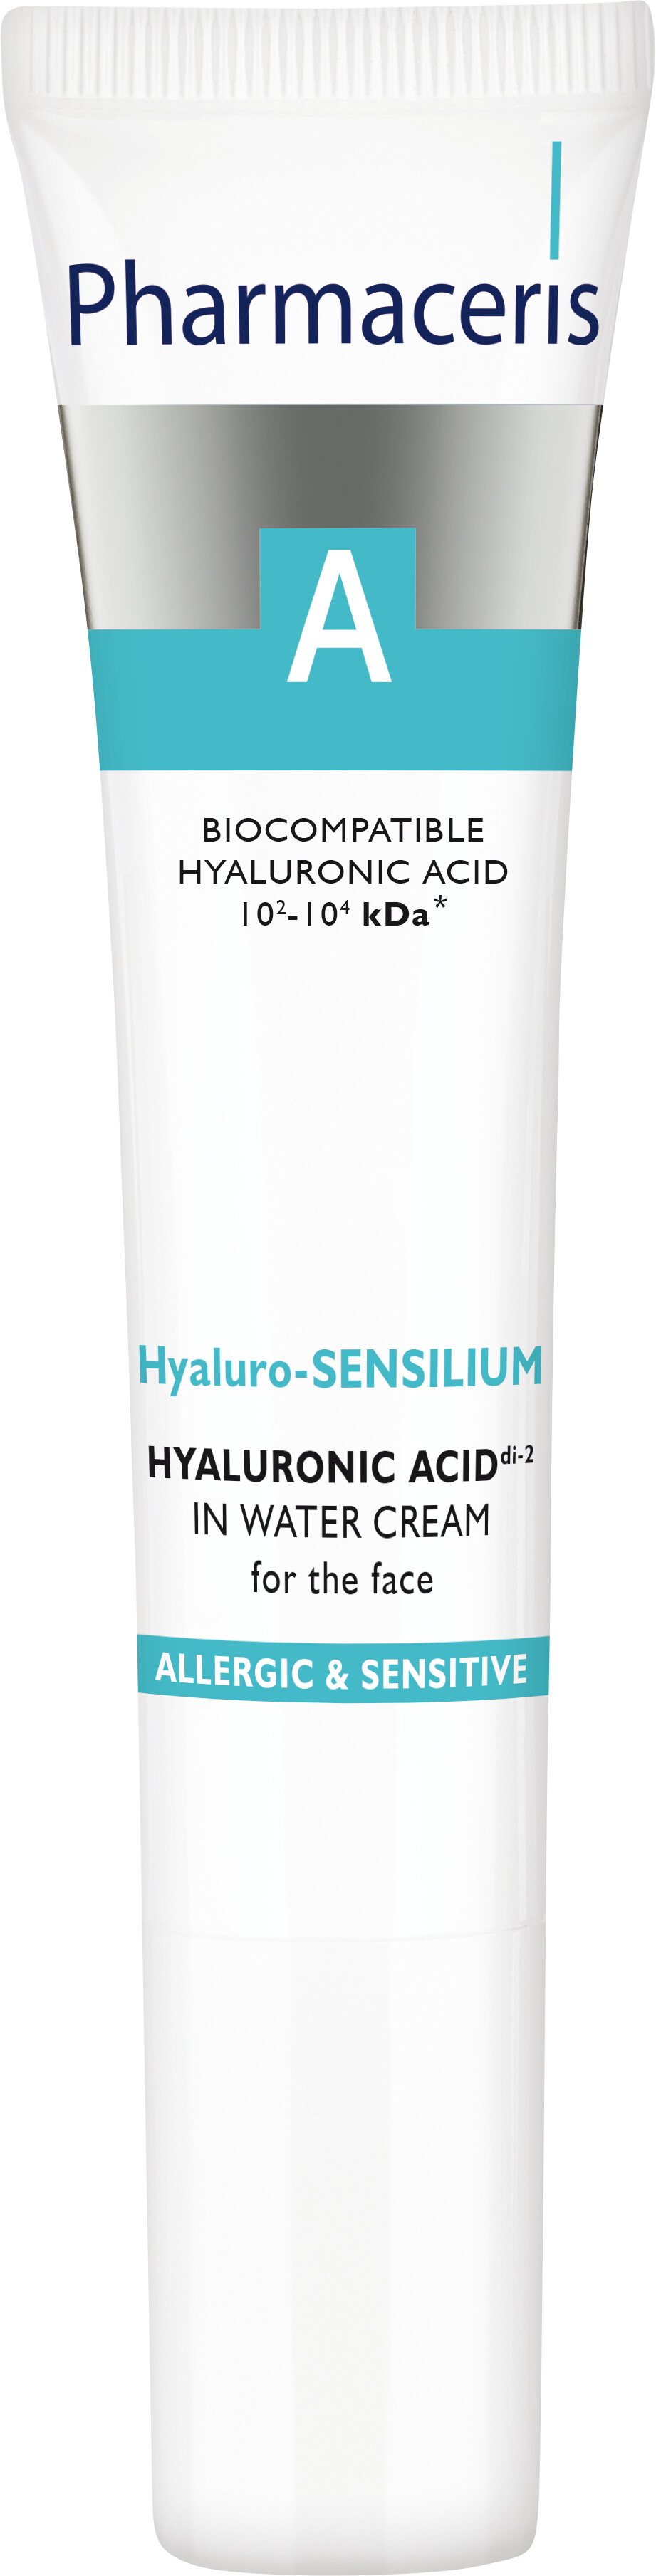 Pharmaceris A Hyaluro-Sensilium Hyaluronic Acid di-2 In Water Cream 40ml